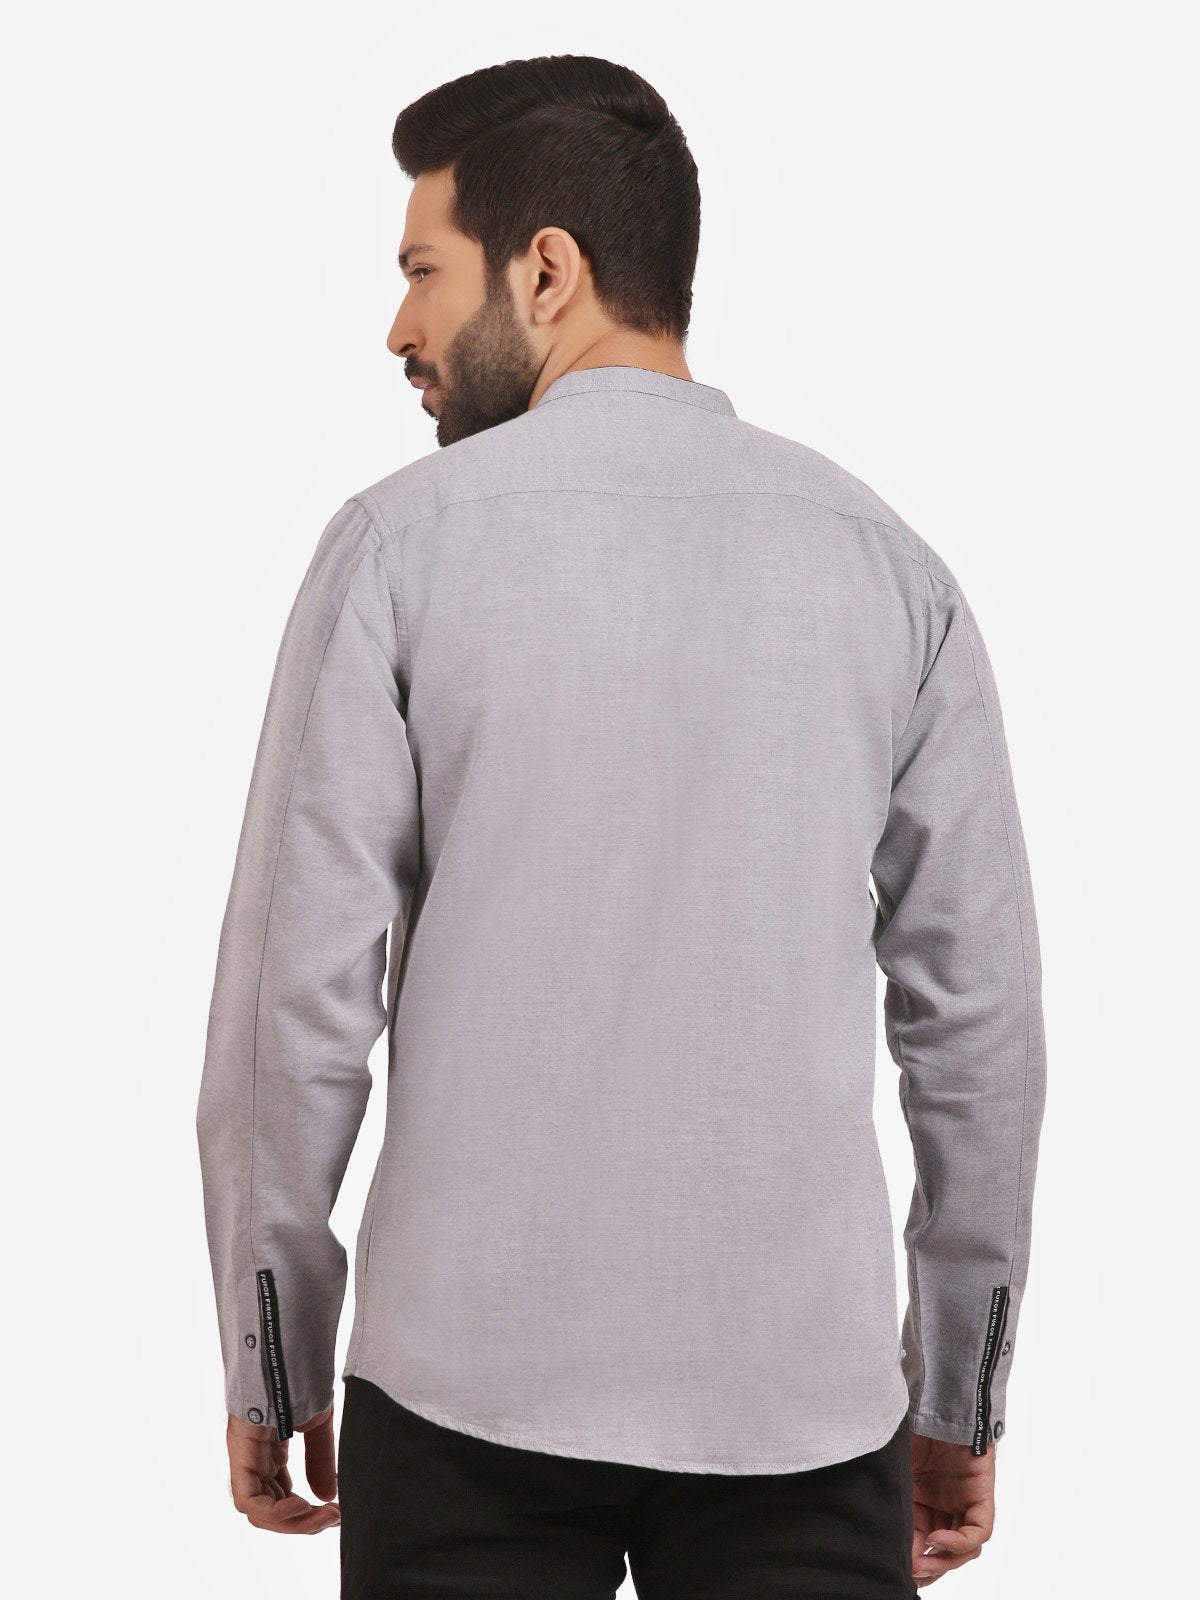 Men's Grey Casual Shirt - FMTS20-31331